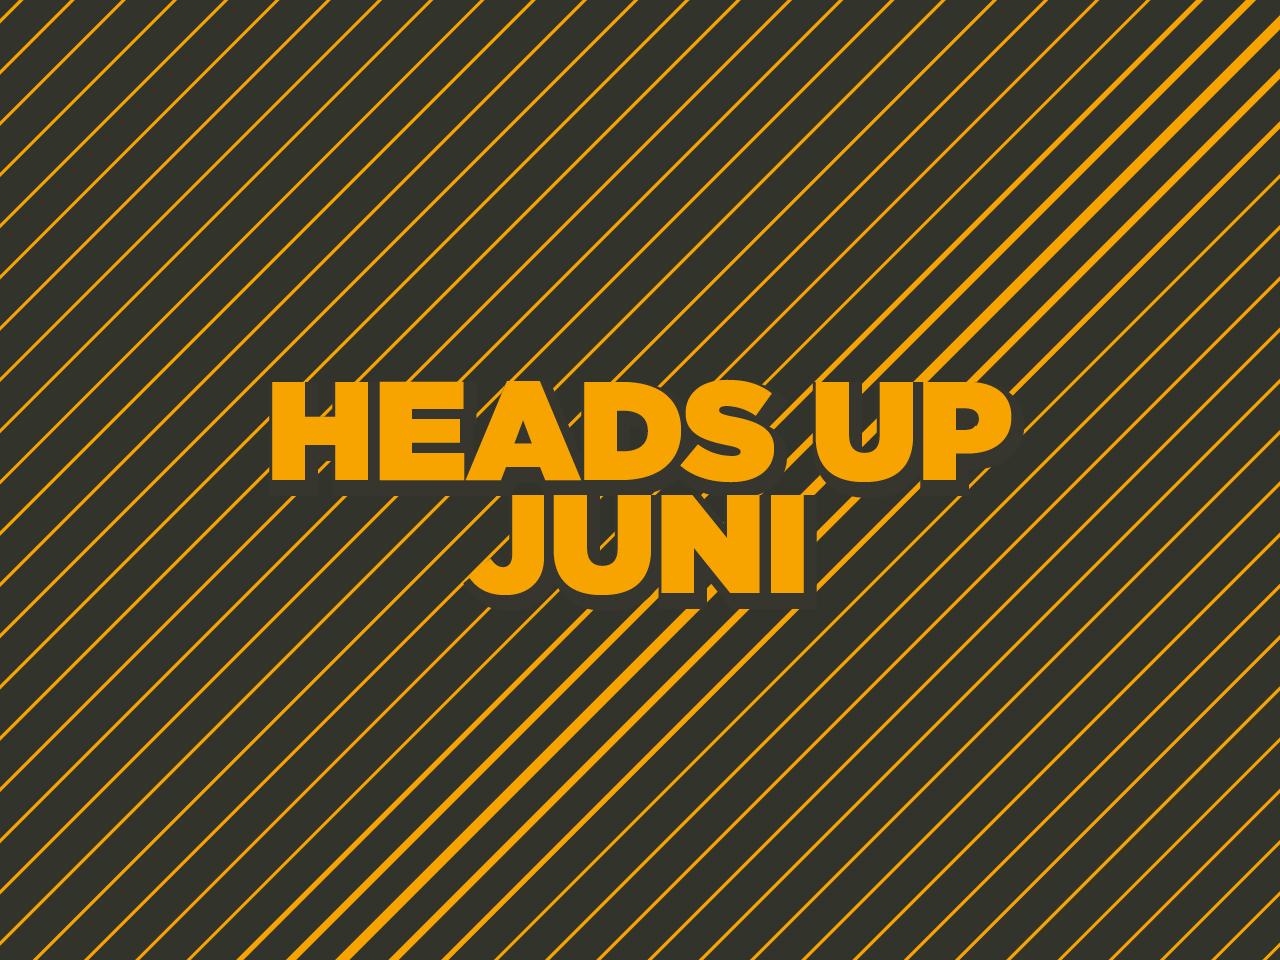 Heads up juni